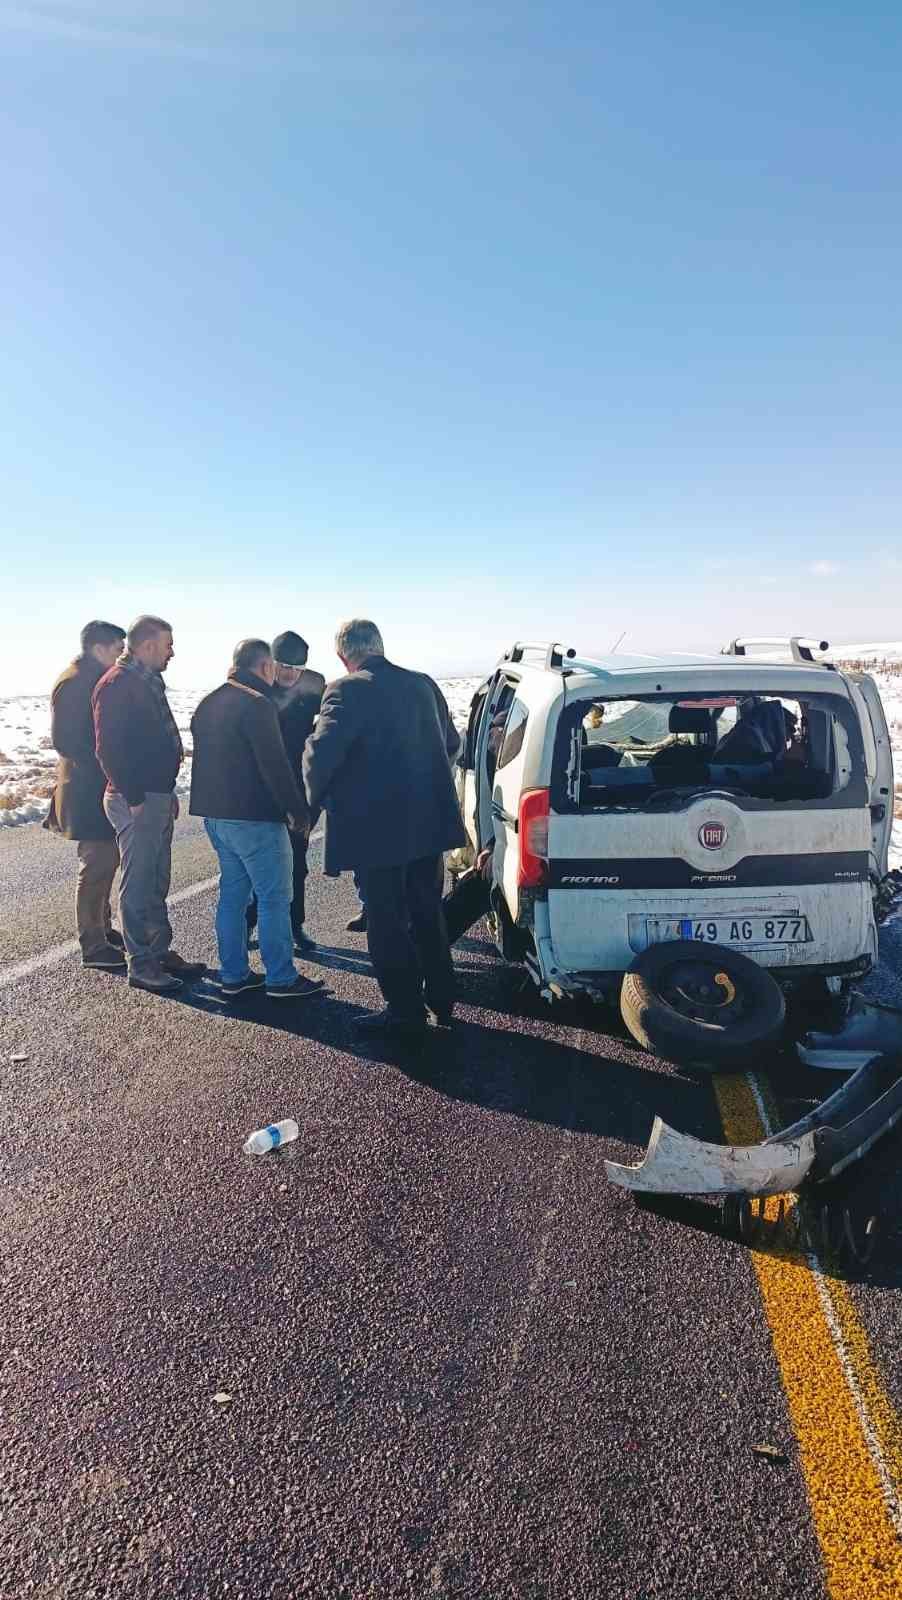 Hatalı sollama sonucu 3 araç birbirine girdi #diyarbakir